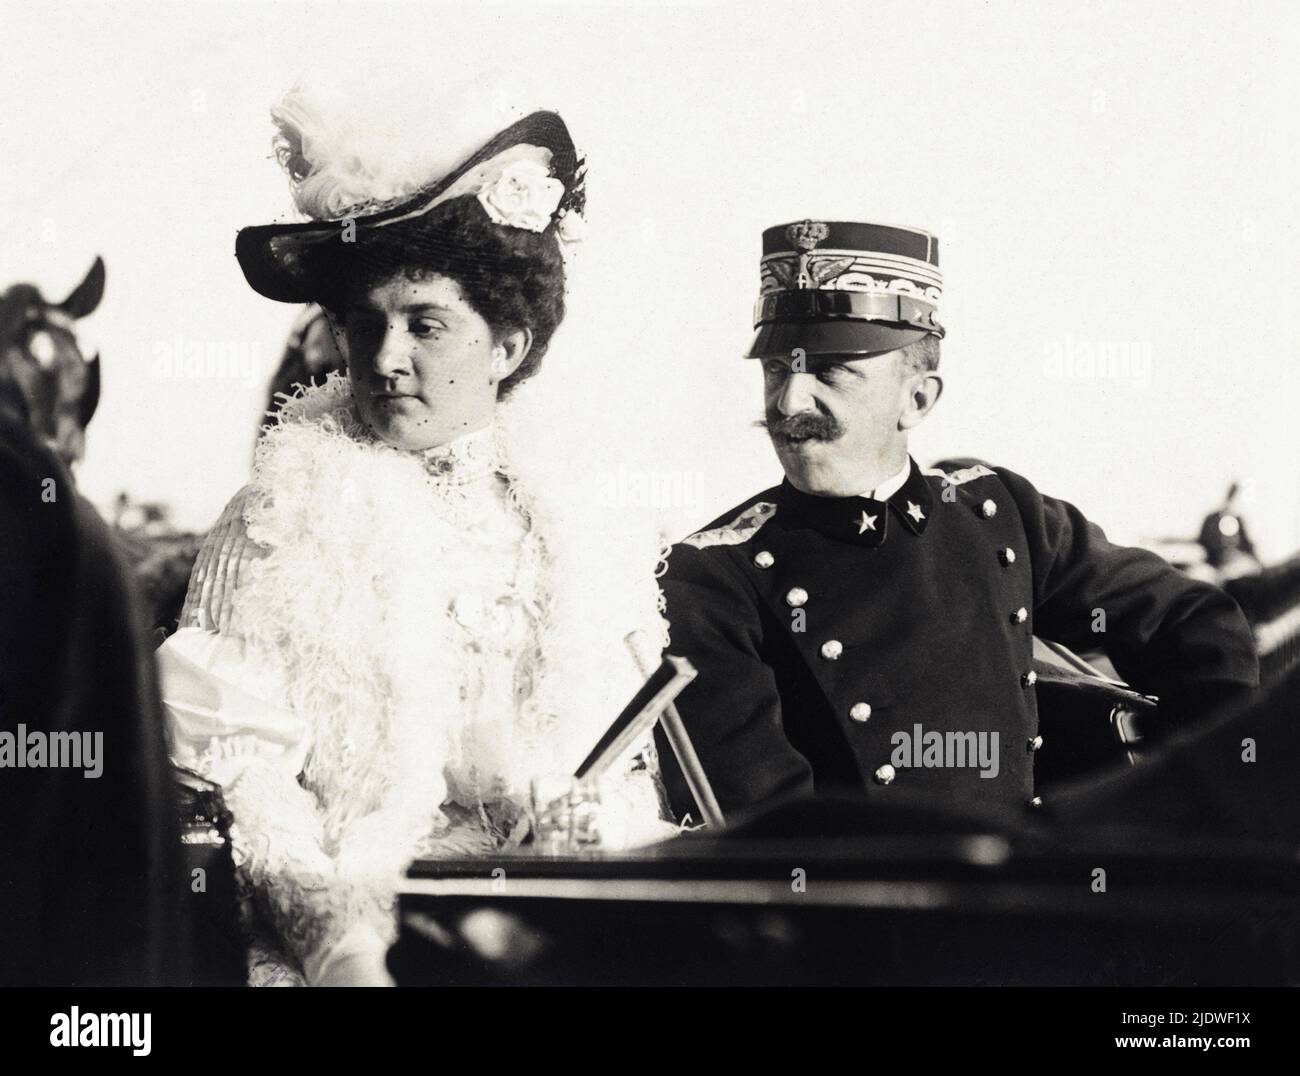 1902 ca. , Italia : il Re d'Italia VITTORIO EMANUELE III di SAVOIA ( 1869 - 1947 ), con lui la moglie Regina ELENA di Montenegro ( Hélene , 1873 - 1952 ) , foto di P. Lucchesi , Roma - CASA SAVOIA - ITALIA - REALI - Nobiltà ITALIANA - NOBILTÀ - ROYALTY - STORIA - FOTO STORICHE - - baffi - baffi - marito e moglie - SAVOIA - cappello - cappello - piume di marabù - piume - struzzo - divisa militare - uniforme - militare Uniforme ---- Archivio GBB Foto Stock